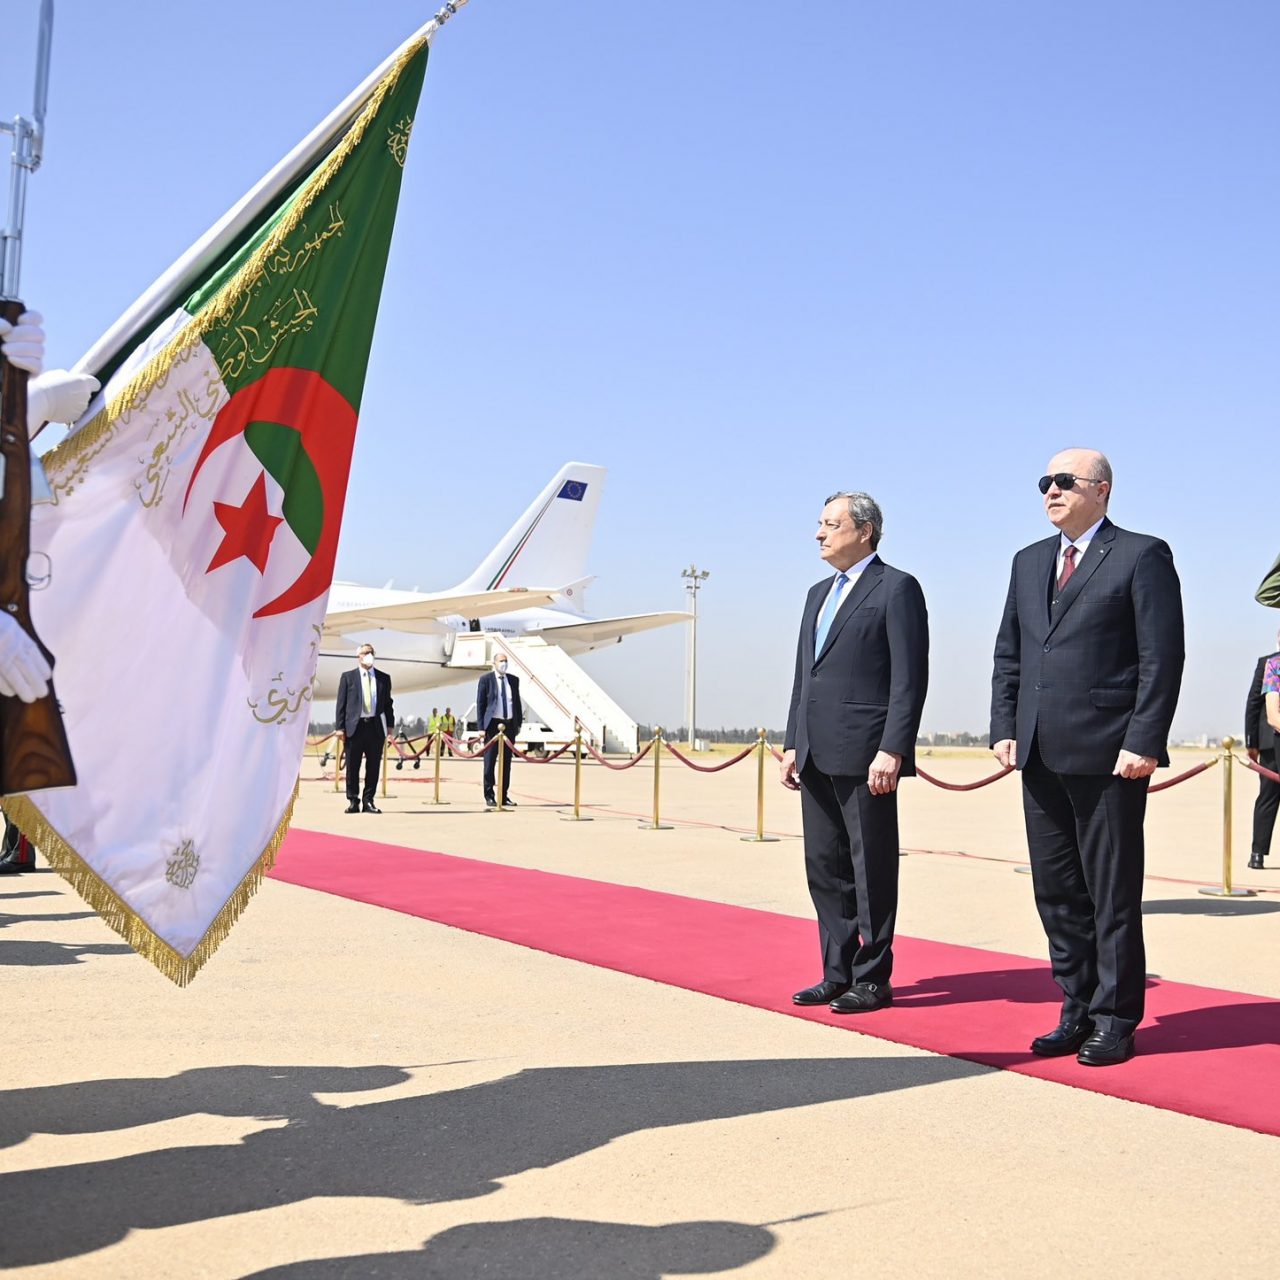 L’Algérie et l’Italie signent 15 accords de coopération dans l’artisanat, l’industrie pharmaceutique, les investissements, la coopération industrielle, les énergies renouvelables  1